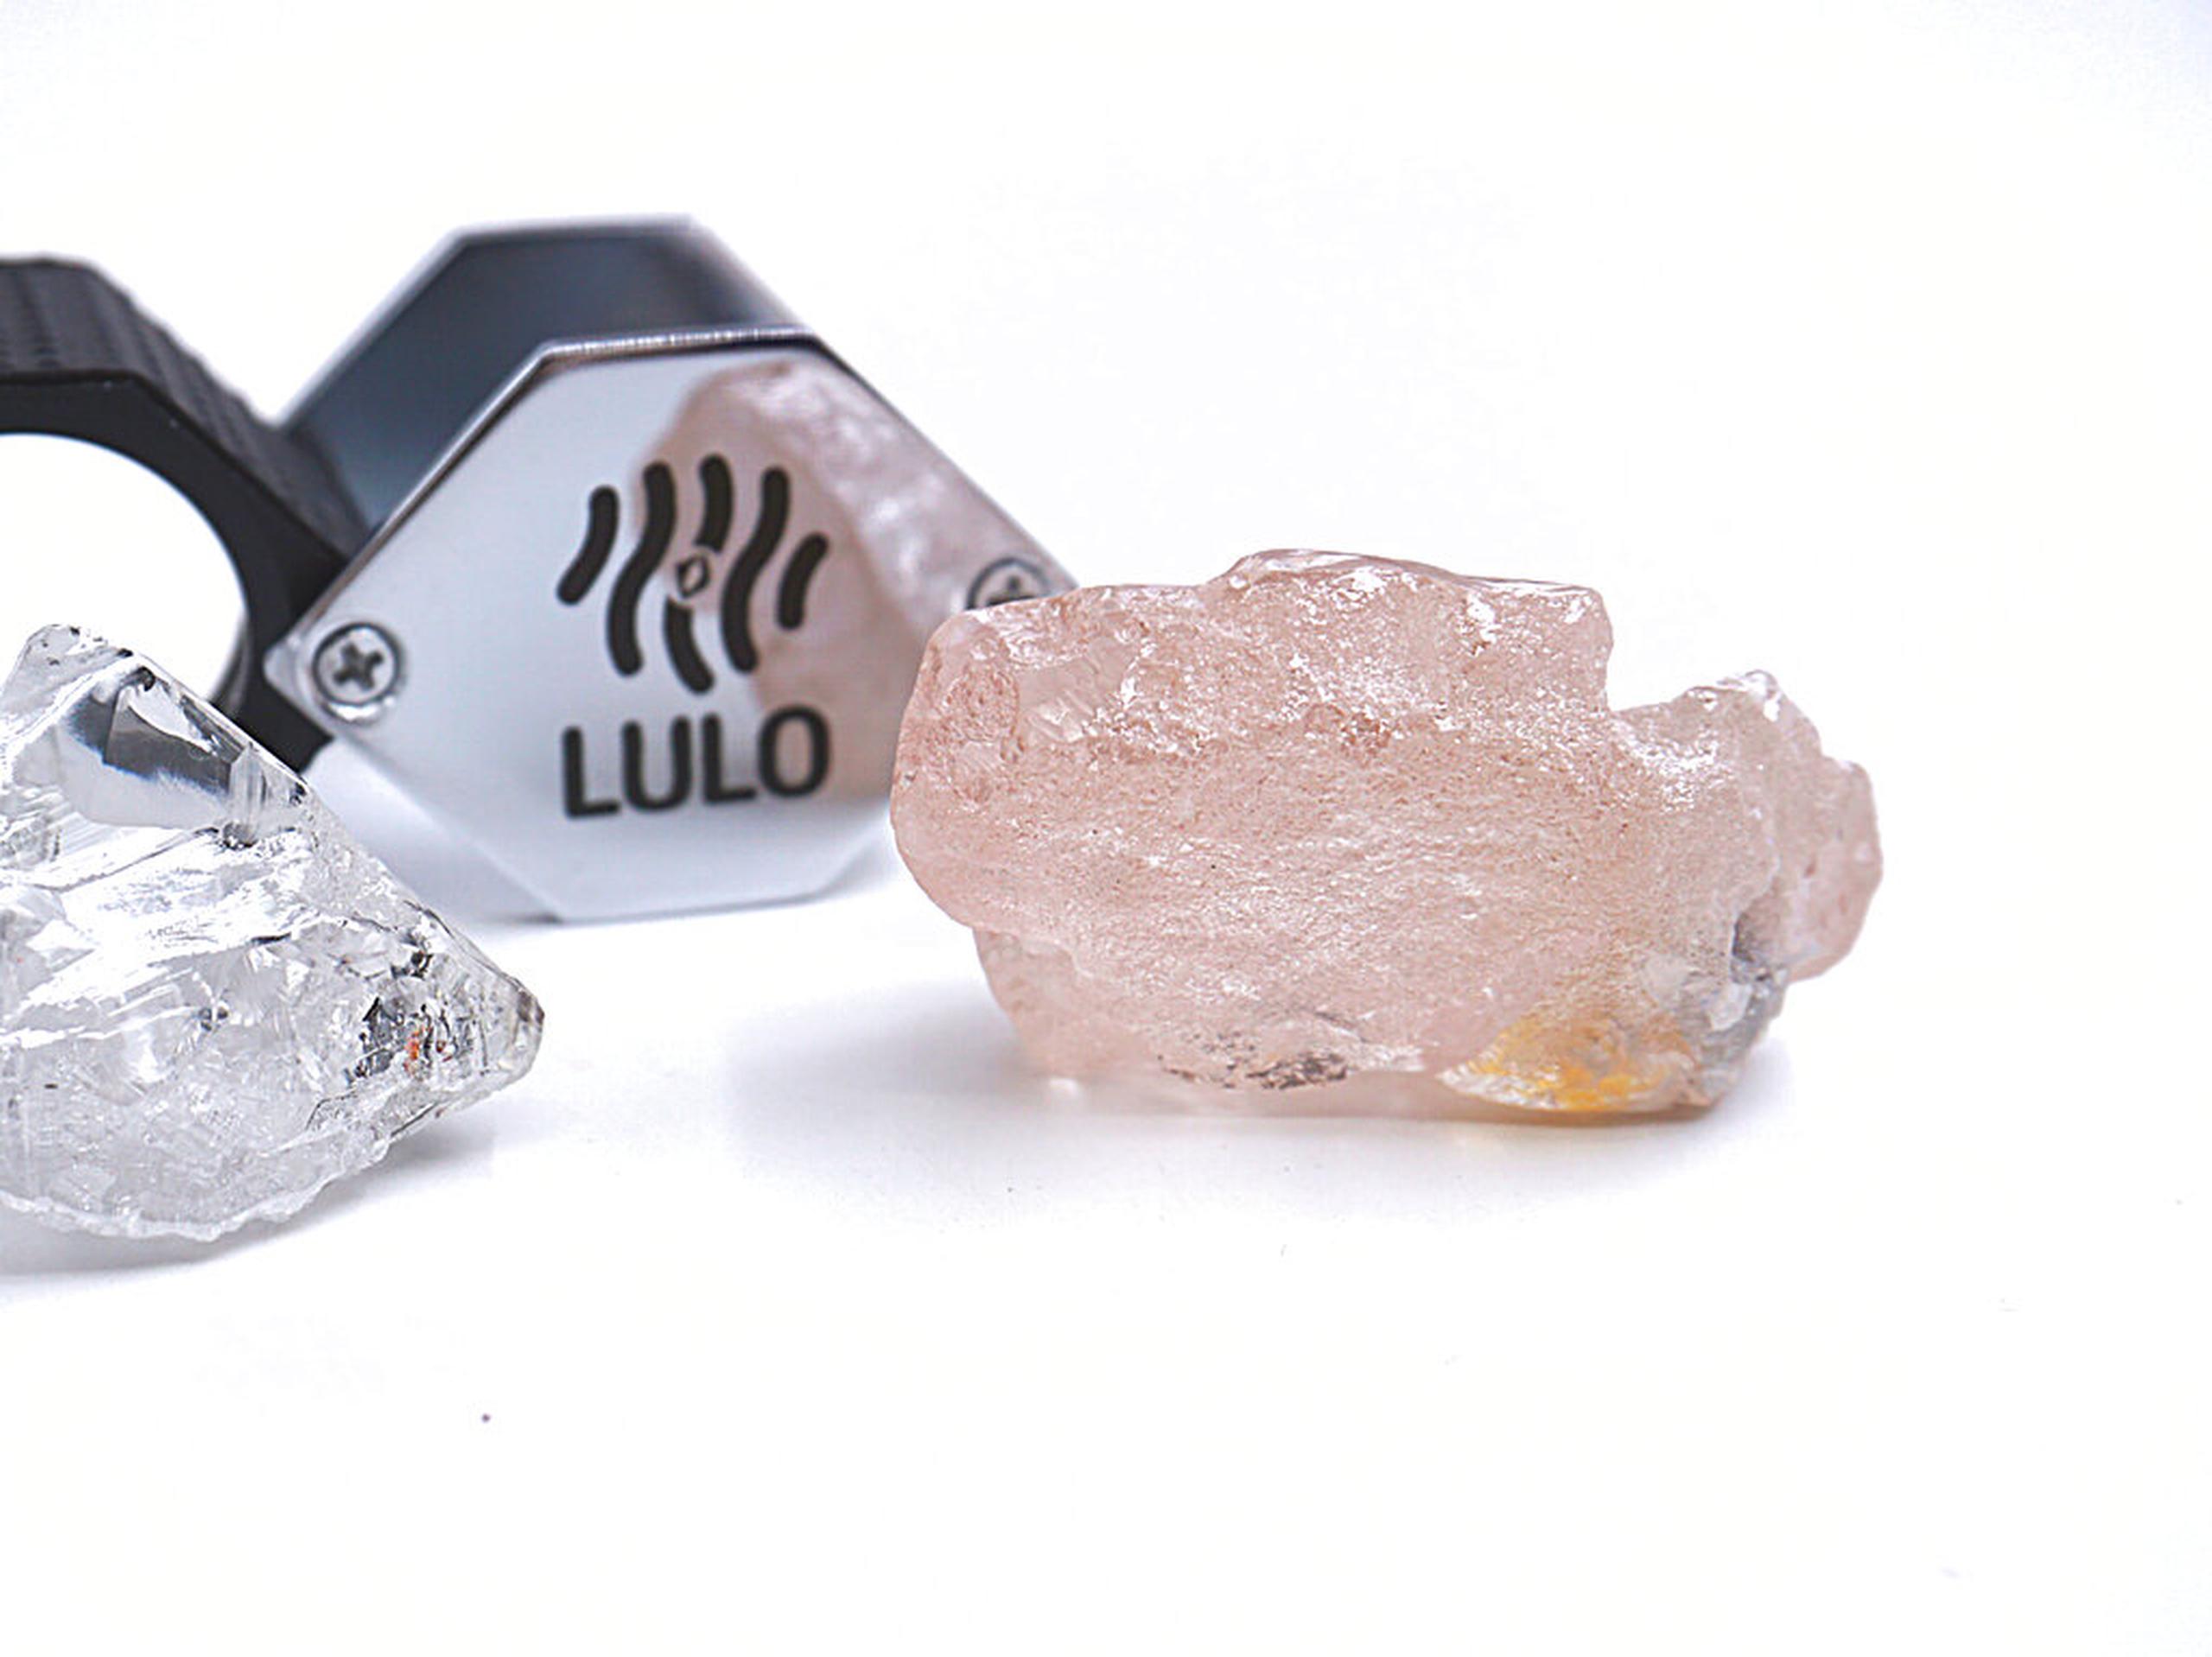 El hallazgo, según Lucapa, es el diamante número 27 de más de 100 quilates encontrado en la mina Lulo.